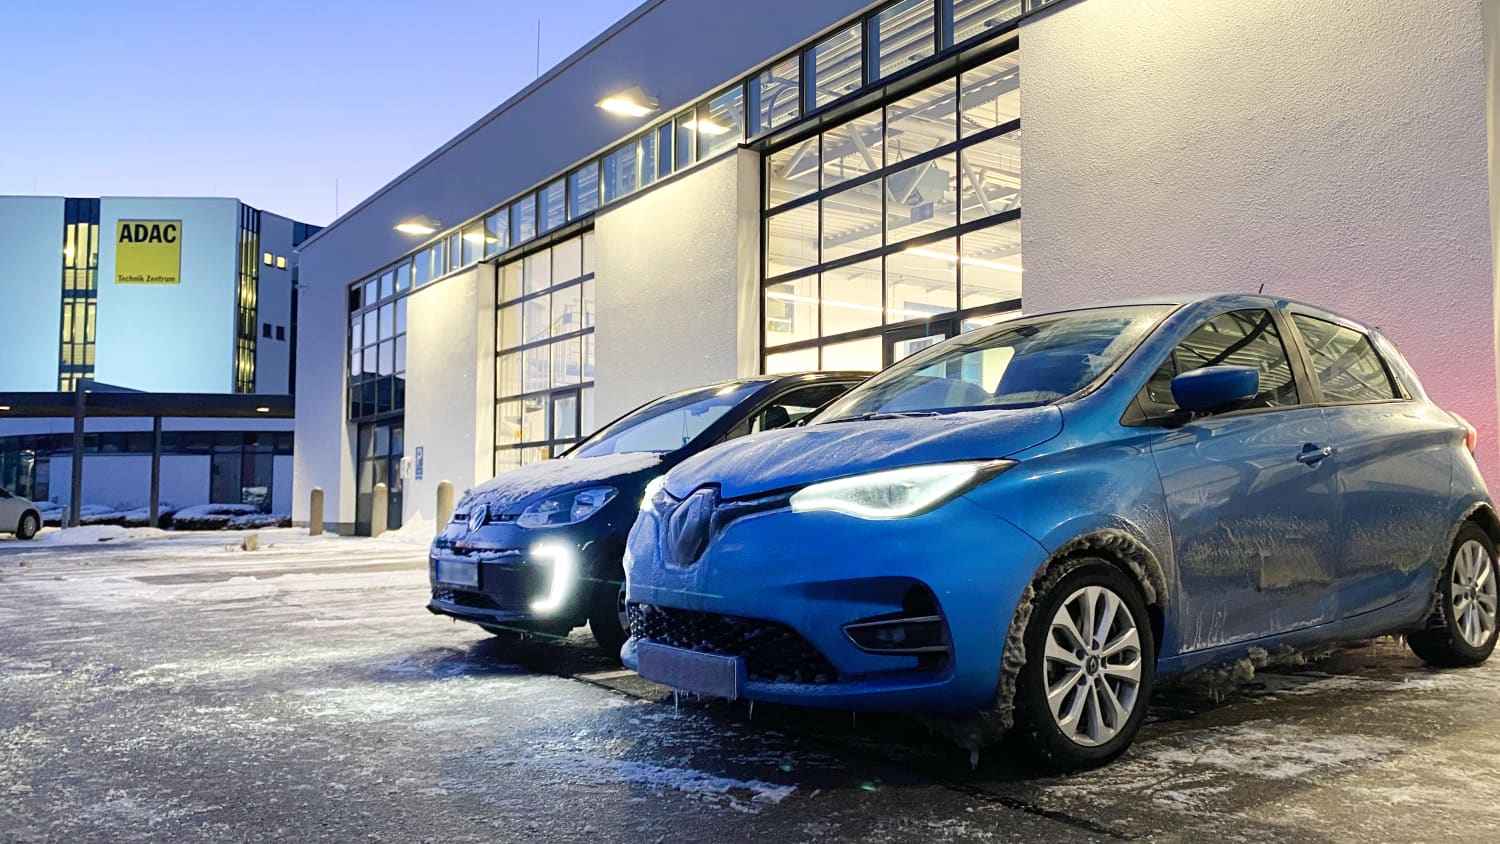 Kältetest E-Auto: Wie lange halten Elektroautos im Stau aus?